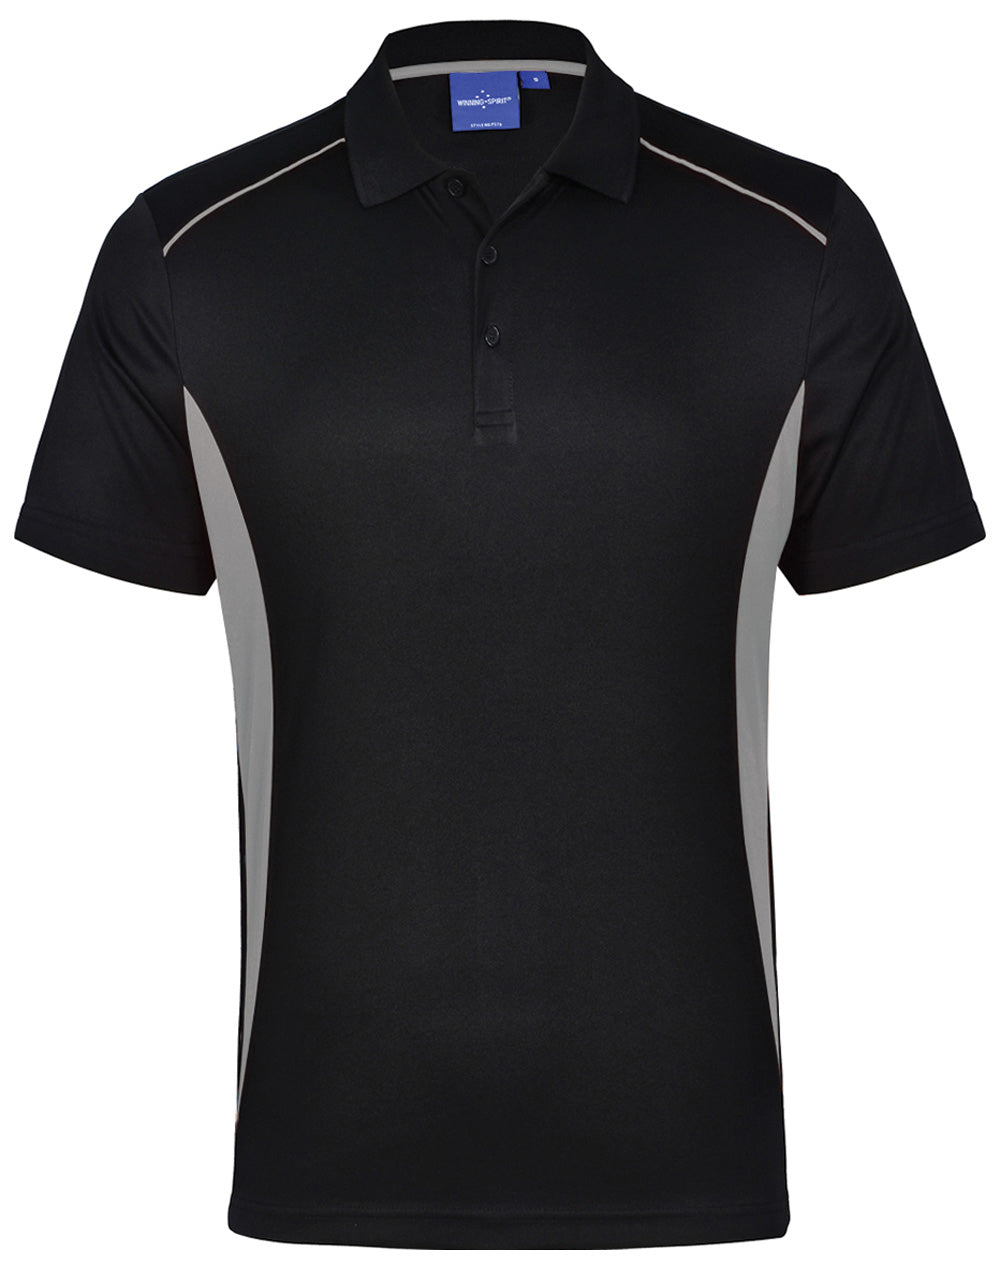 WS Pursuit Adult Polo Shirt (Black Variants)